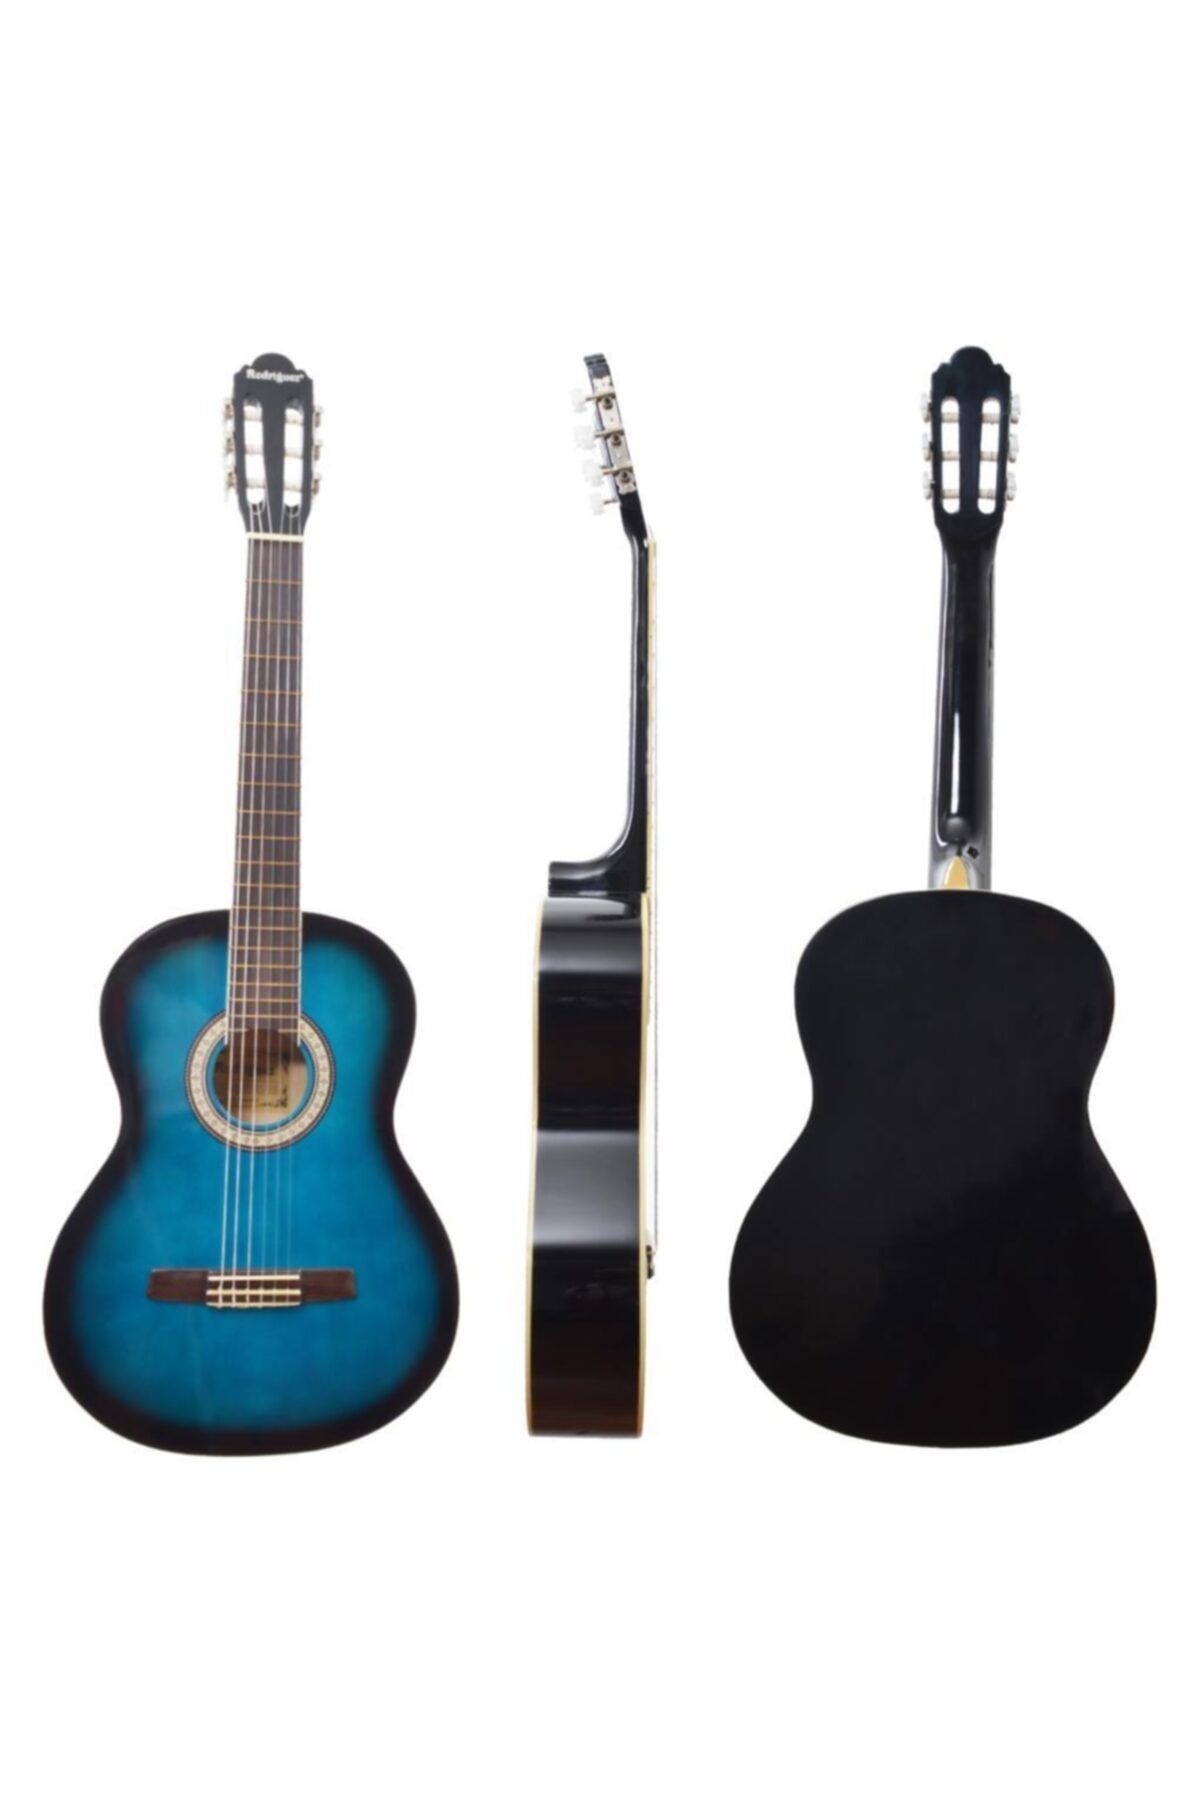 Rodriguez Gitar Klasik Rc465bls